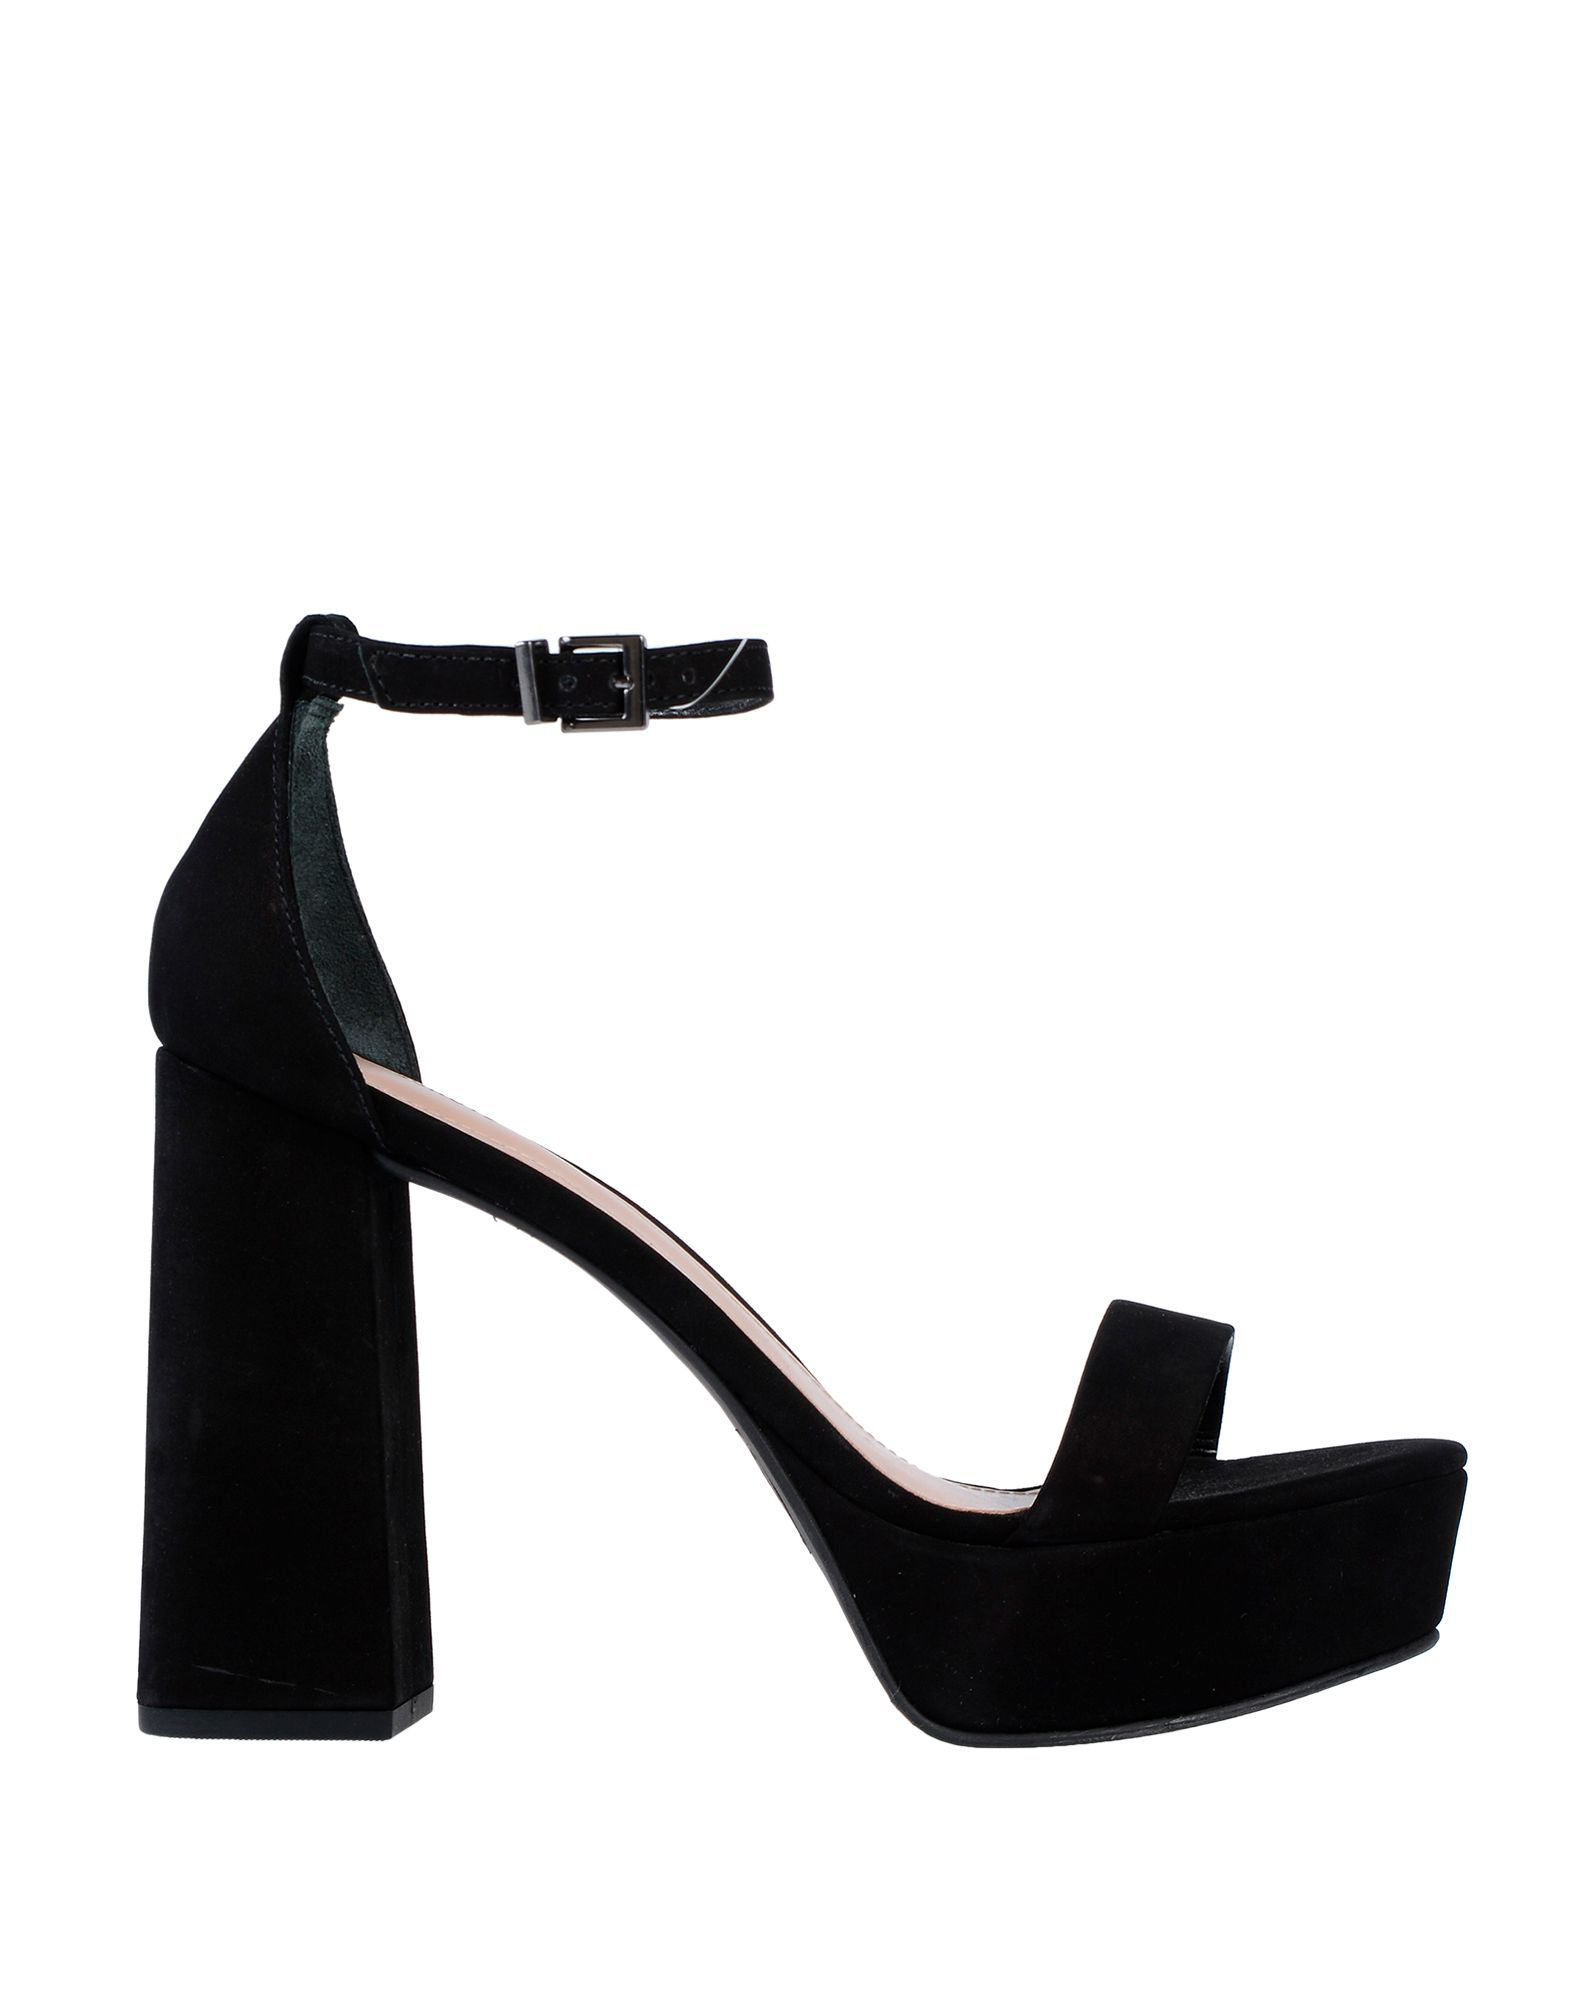 Schutz Sandals In Black | ModeSens